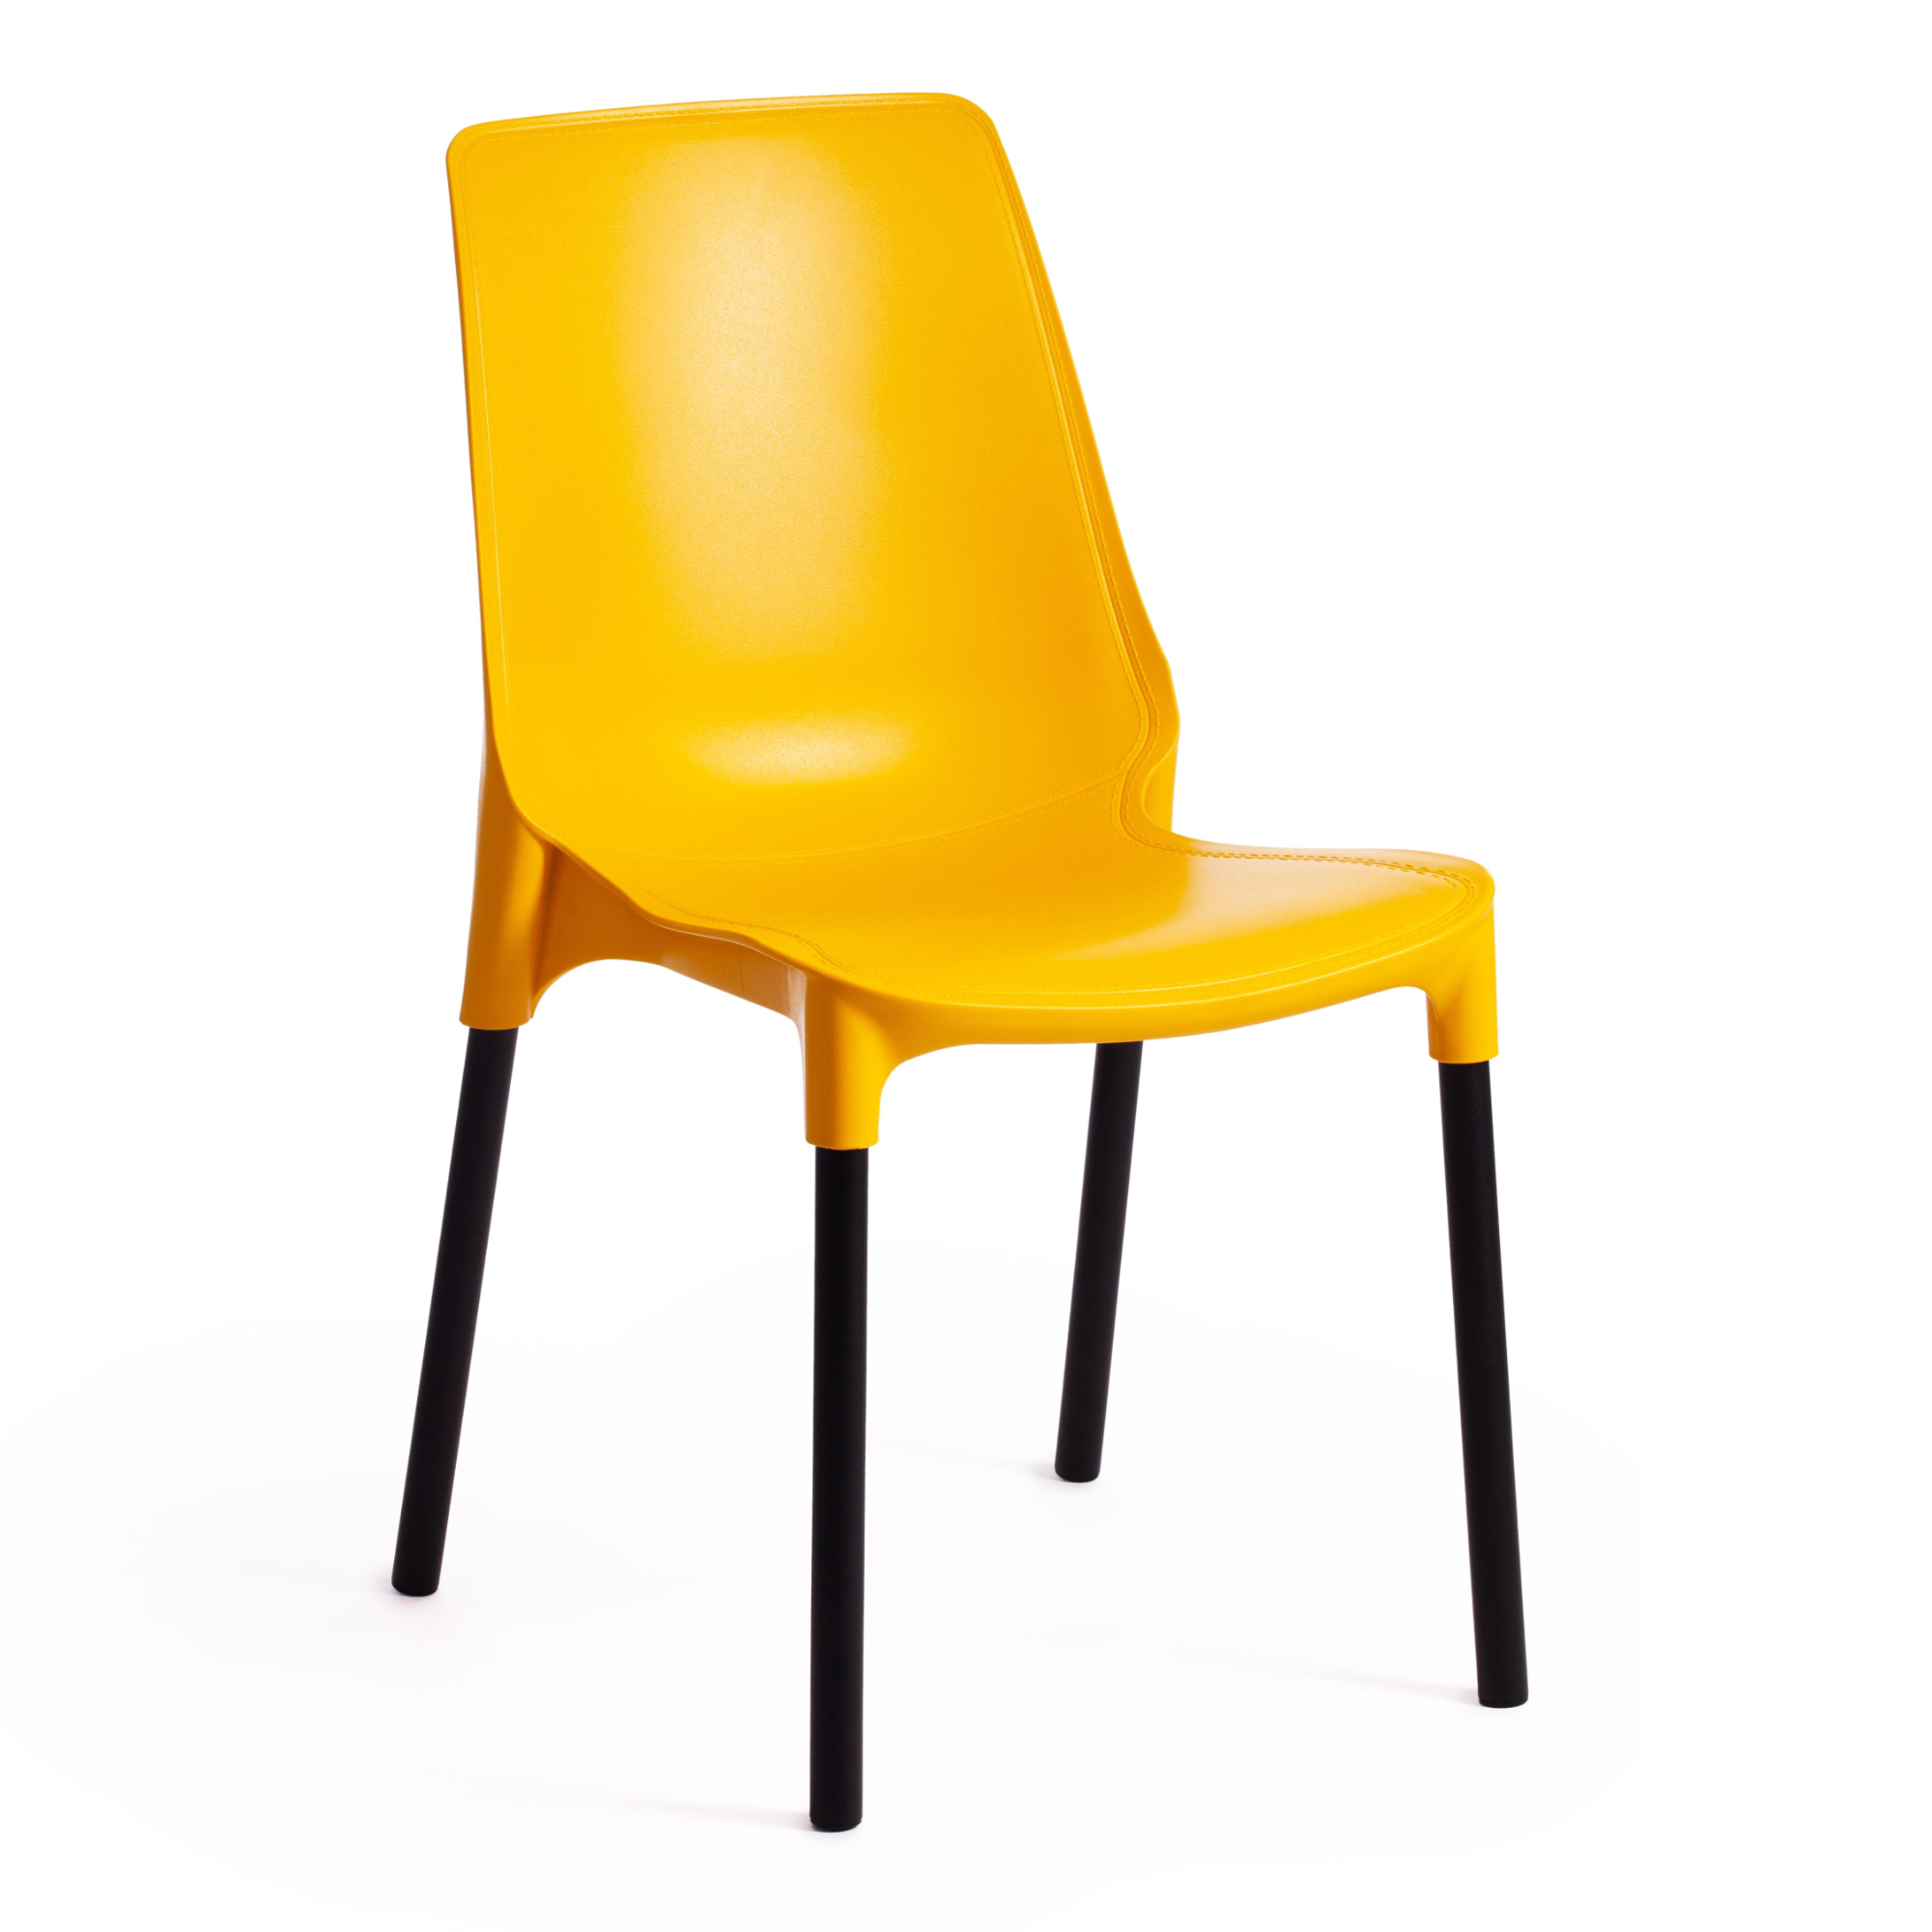 Стул ТС пластик с металлическими ножками желтый 46х56х84 см современный стул fallon с металлическими ножками зеленый бархат